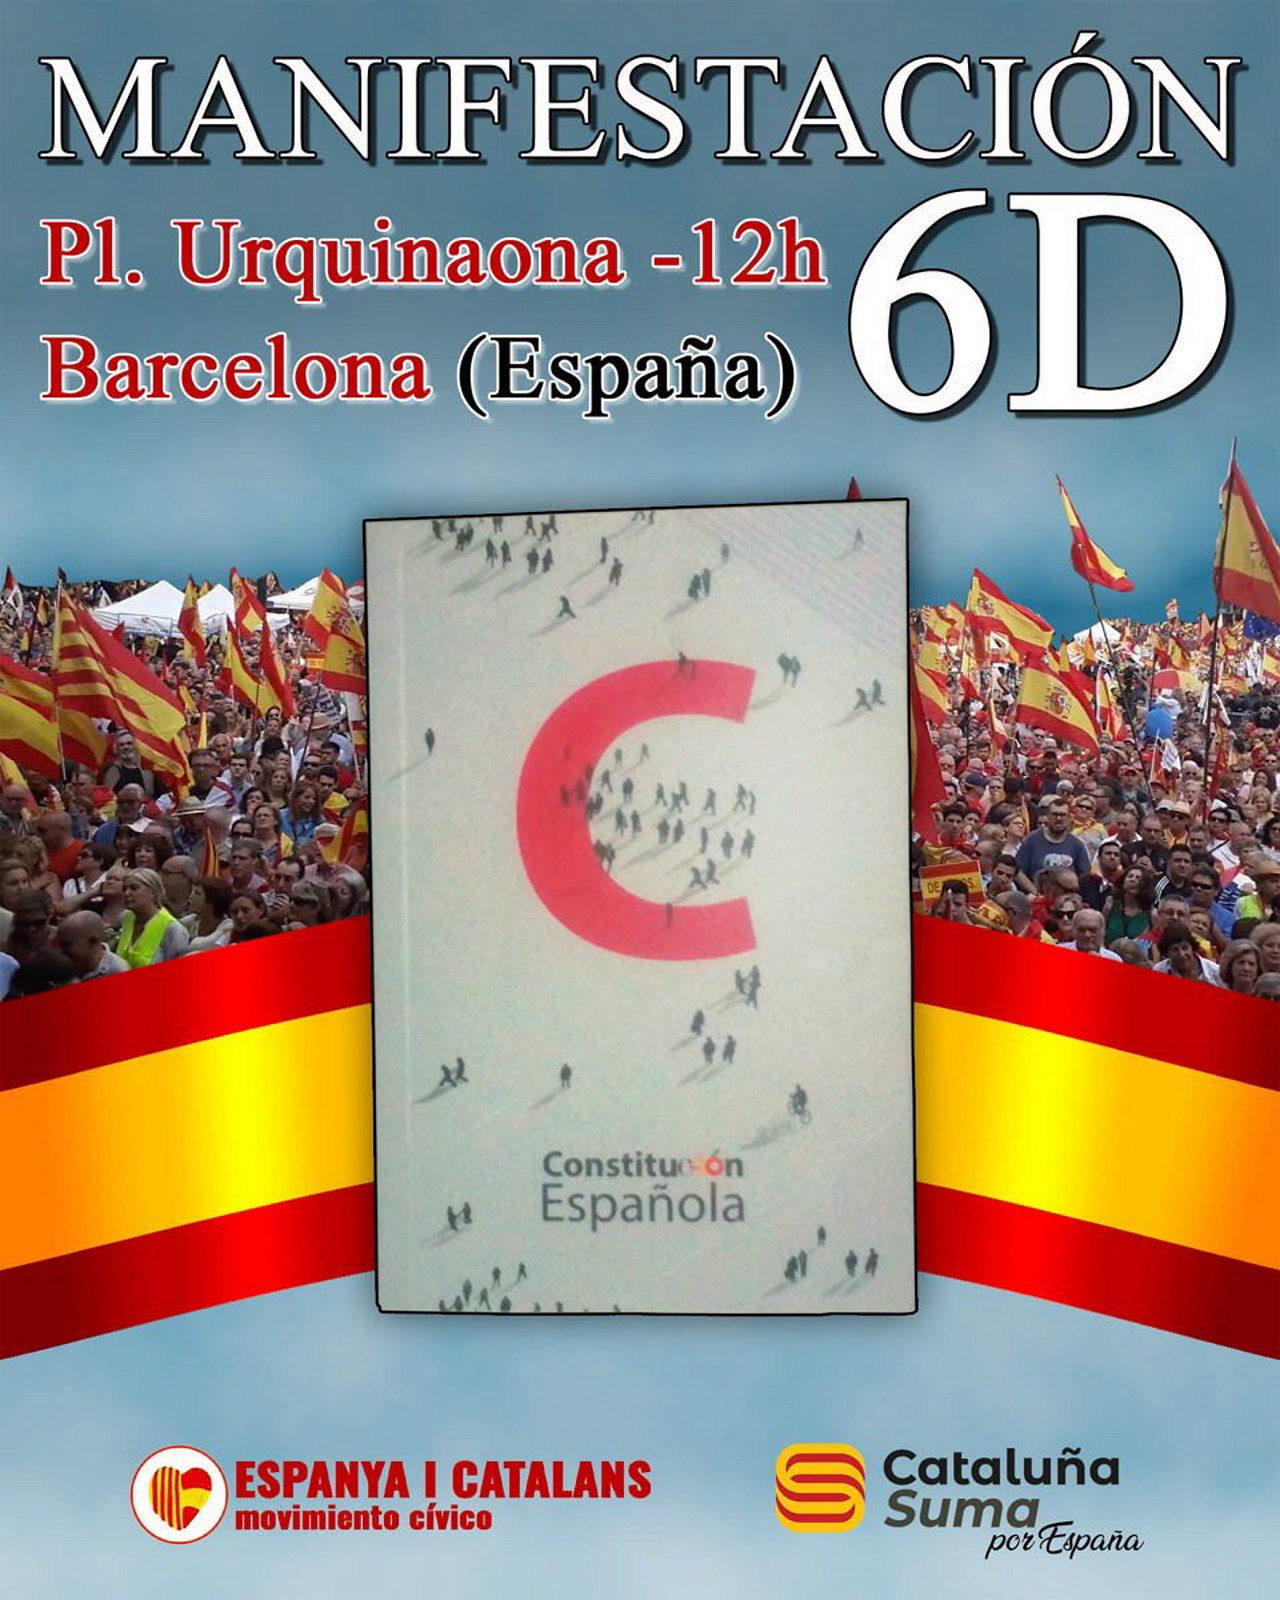 FOTOGRAFÍA. BARCELONA (ESPAÑA), 06.12.2019. Varios miles de personas se manifiestan en Barcelona a favor de la unidad de España. Ñ Pueblo (32)